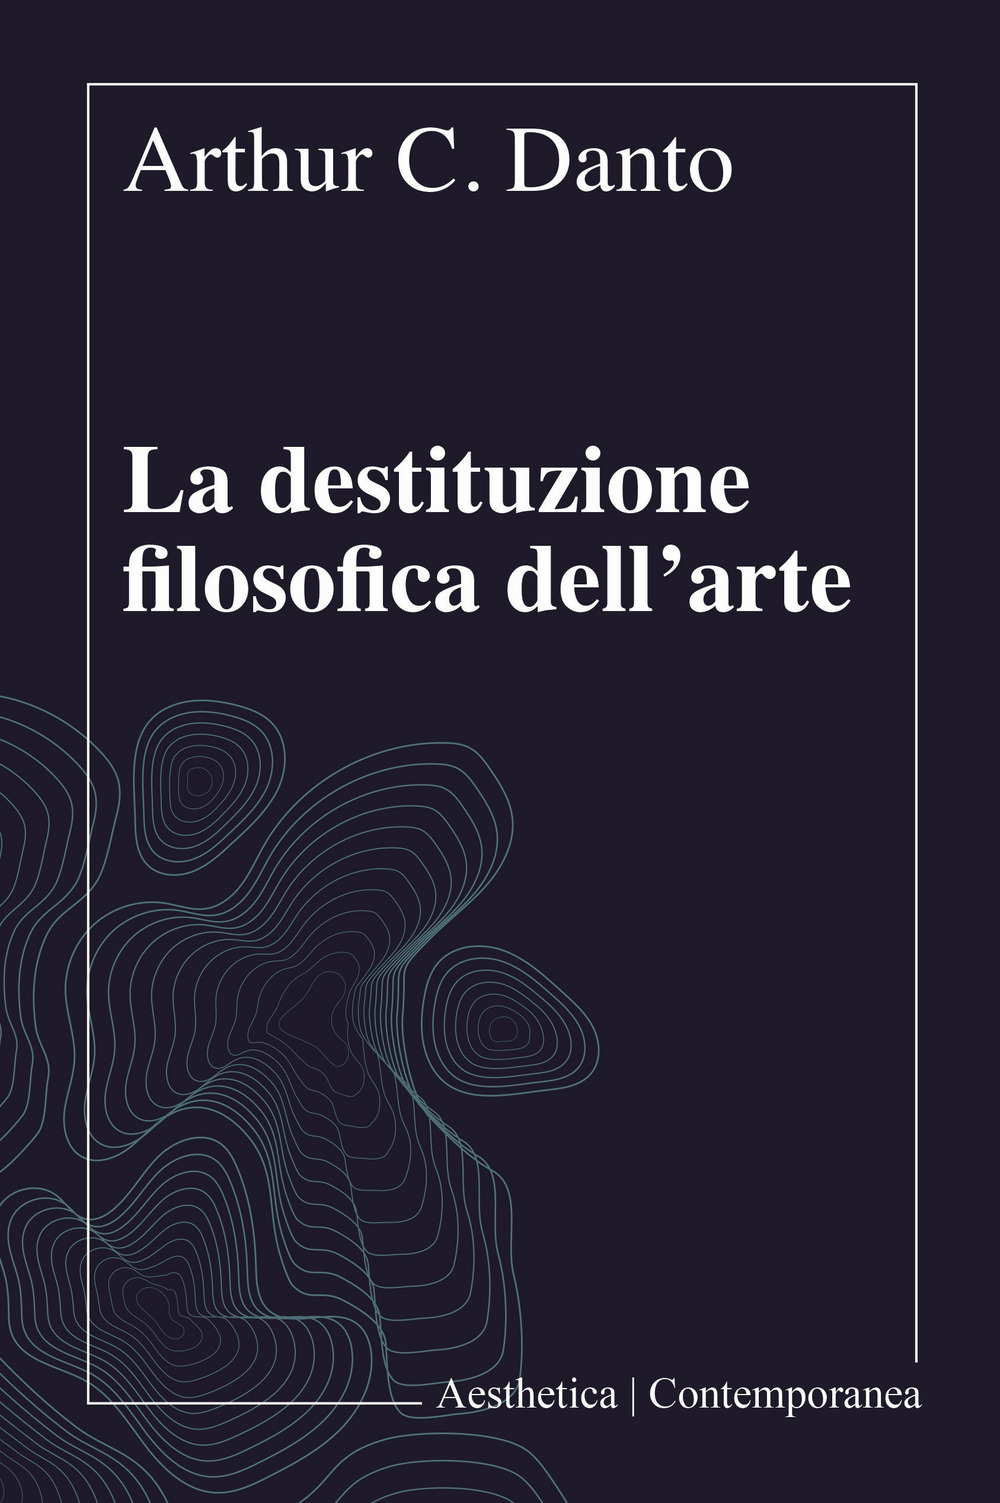 Libri Danto Arthur C. - La Destituzione Filosofica Dell'arte NUOVO SIGILLATO, EDIZIONE DEL 23/07/2020 SUBITO DISPONIBILE